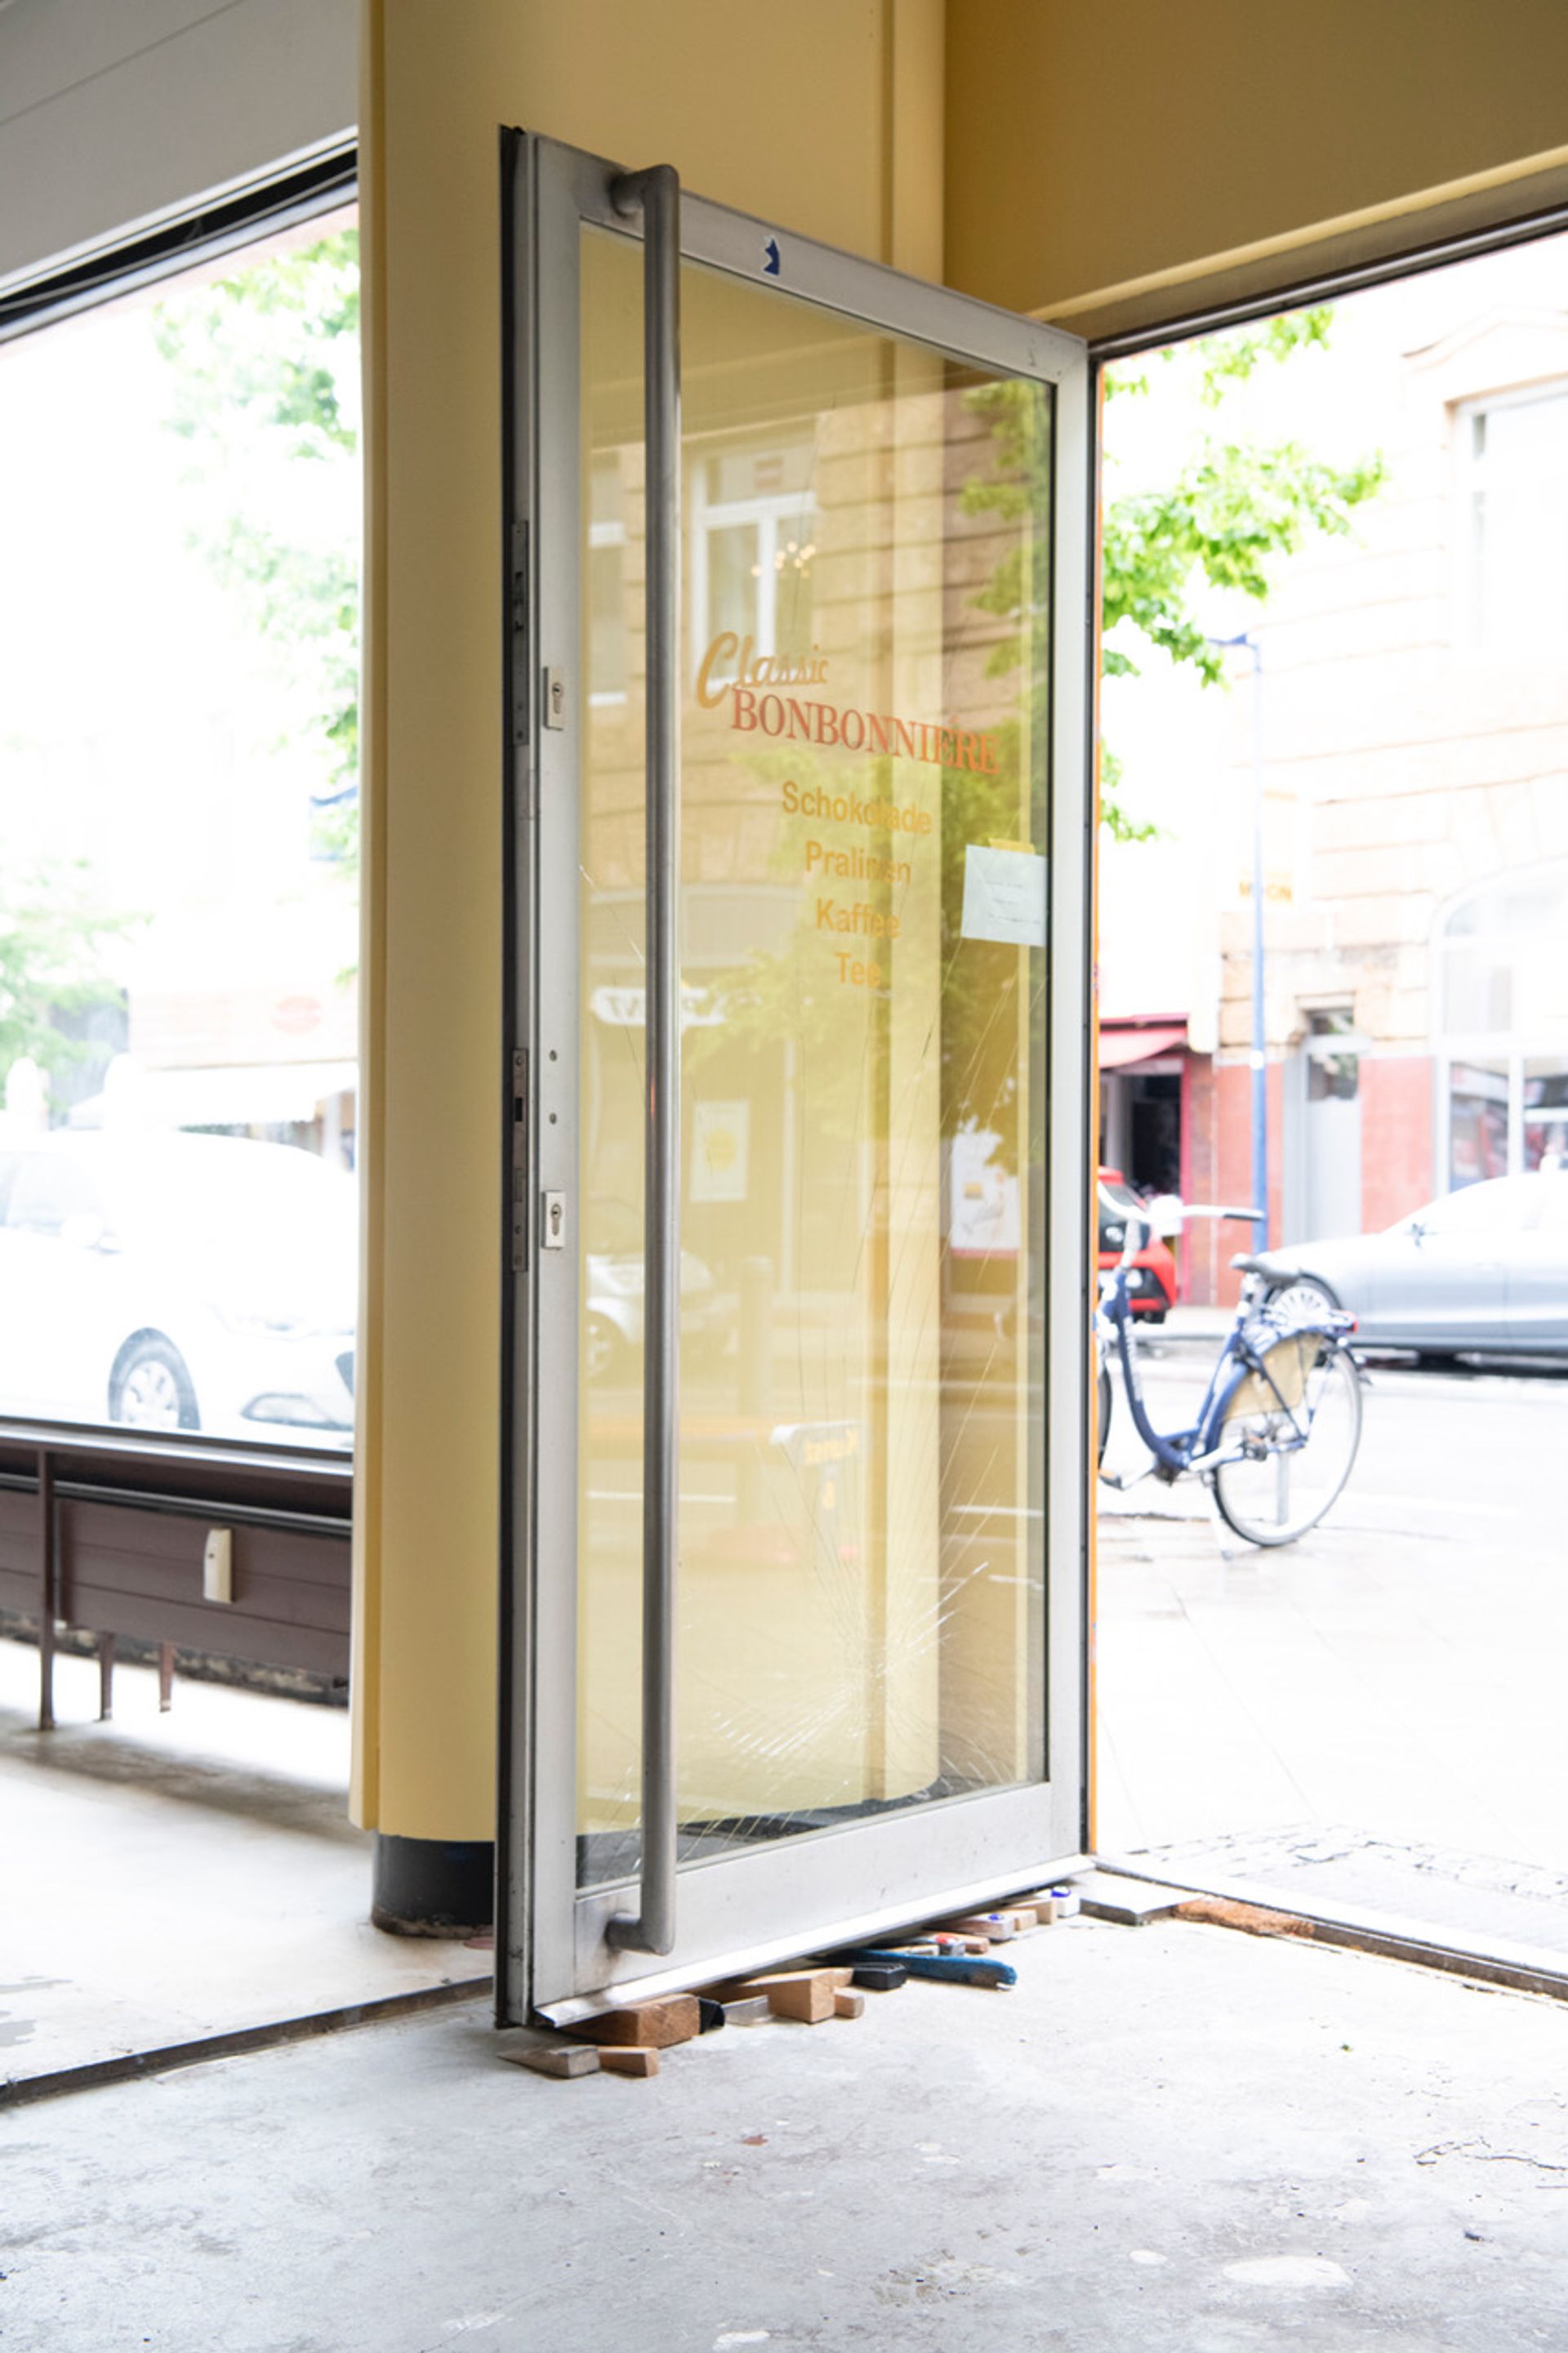 Skulptuerchen, 2015/16, stolen doorstops, dimensions variable